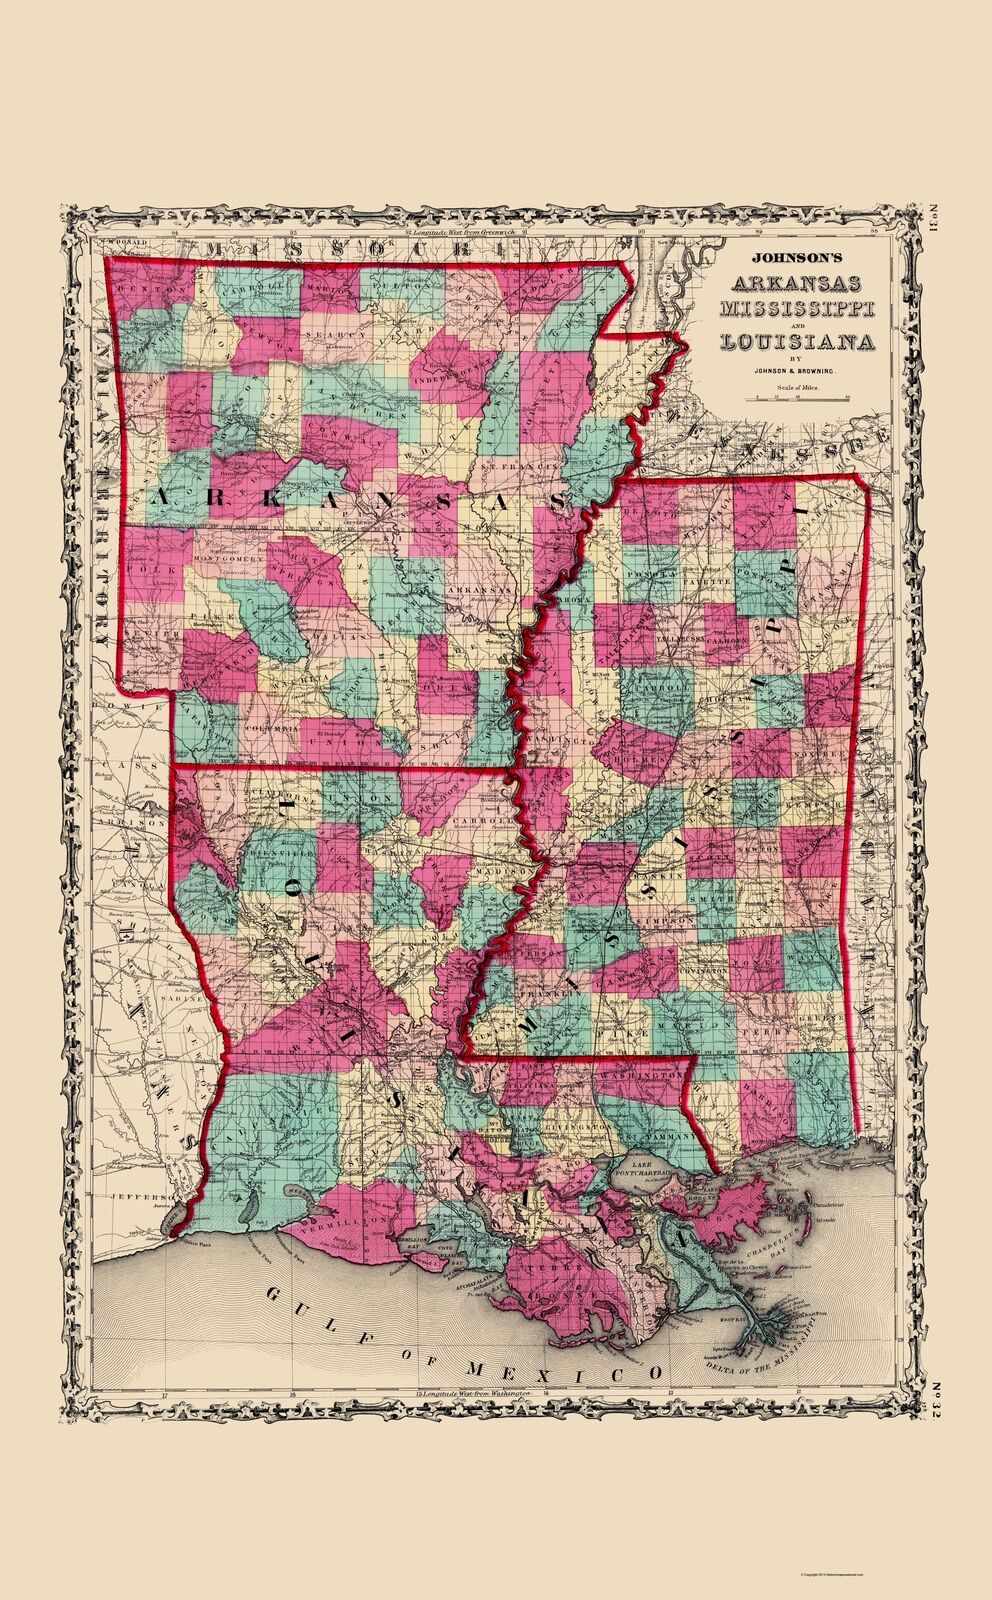 Arkansas Mississippi Louisiana - Johnson 1860 - 23.00 x 37.11